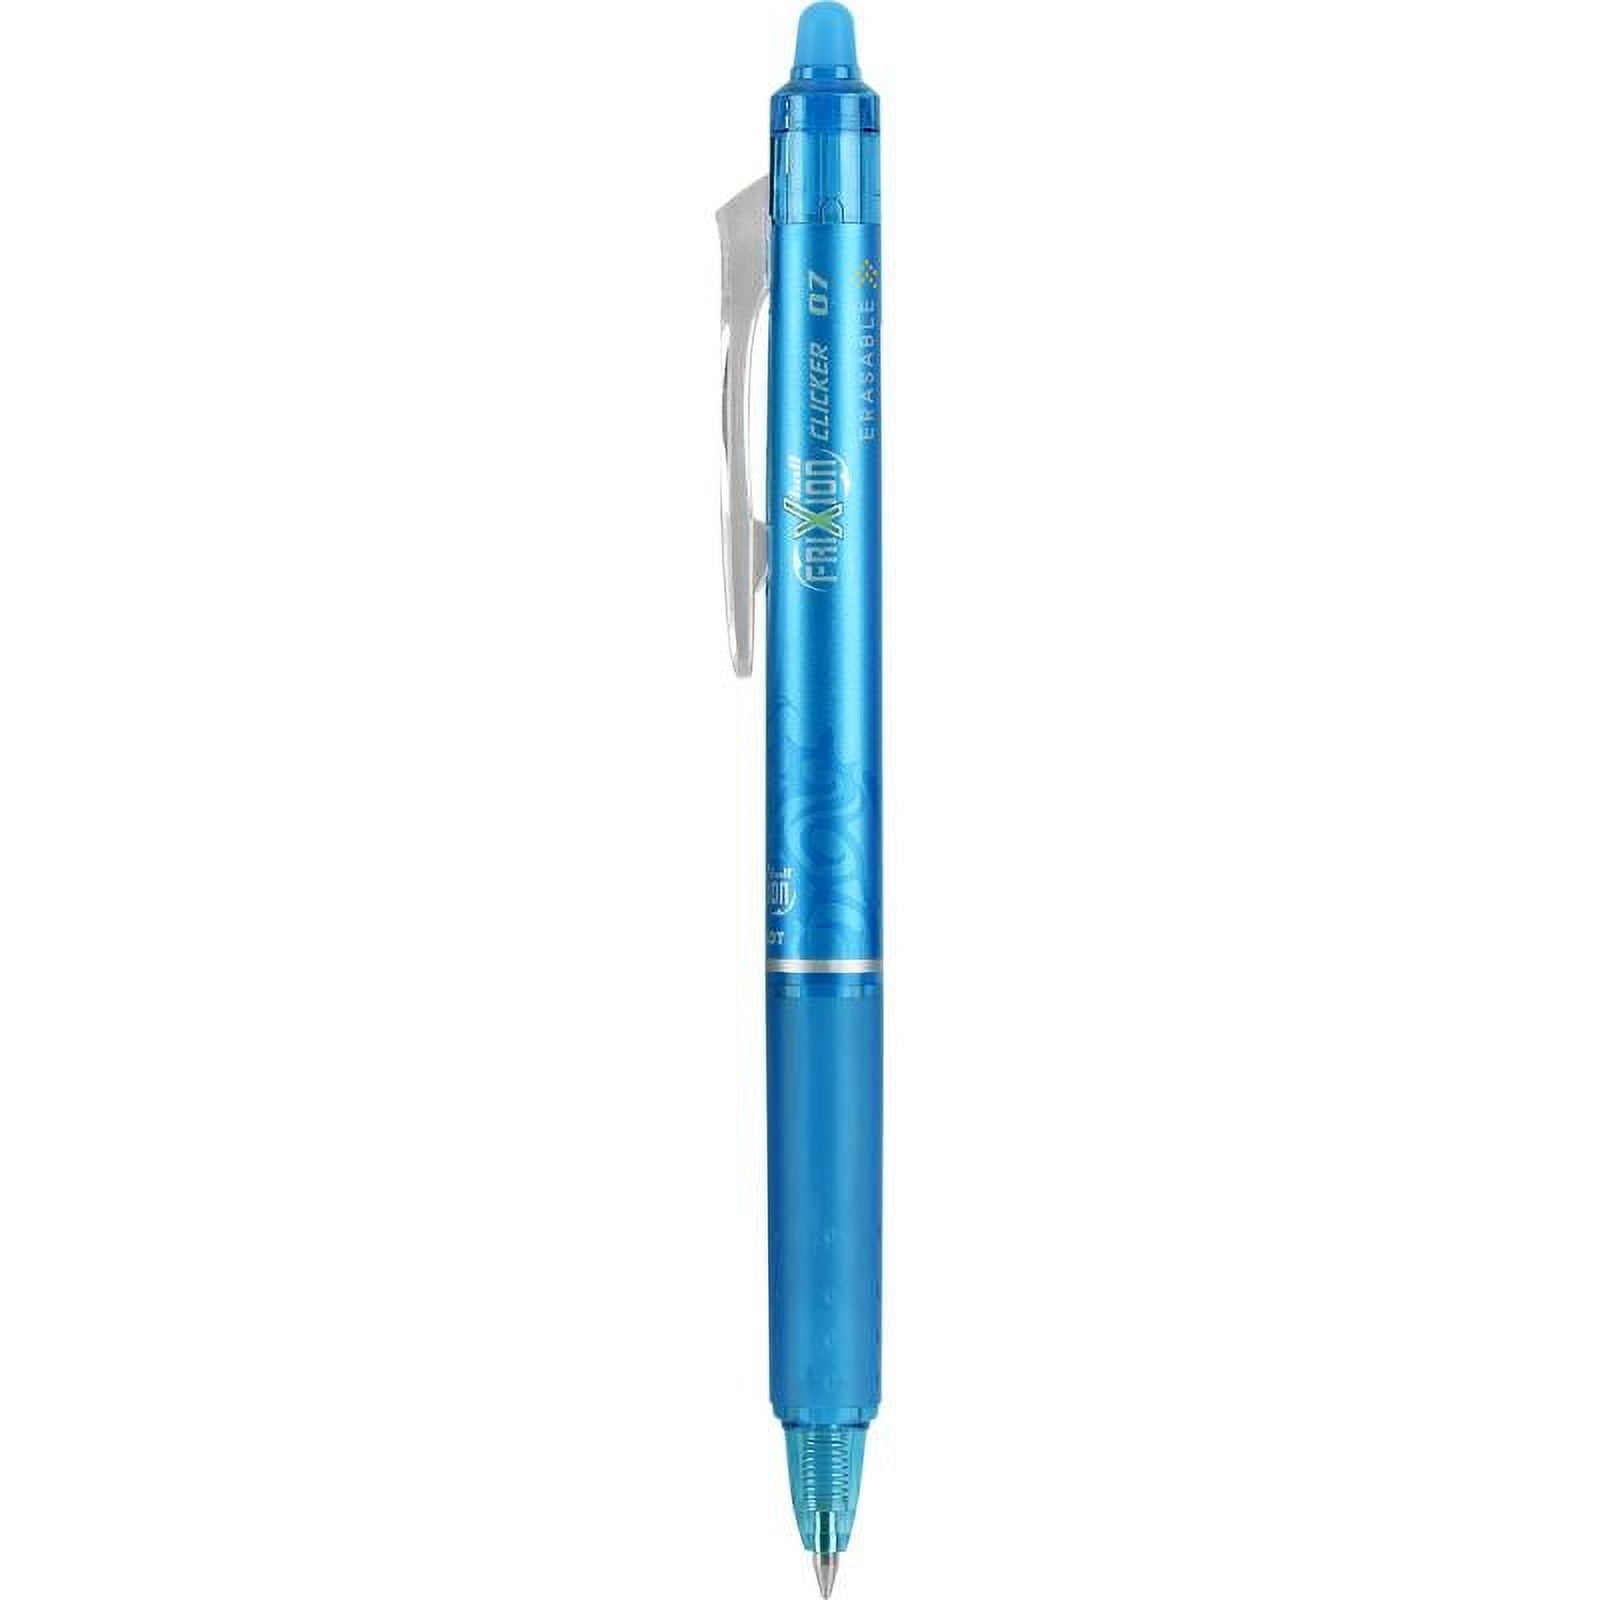 Pilot FriXion BALL 07 MIKA design Erasable Pen Blue Ink (Each)